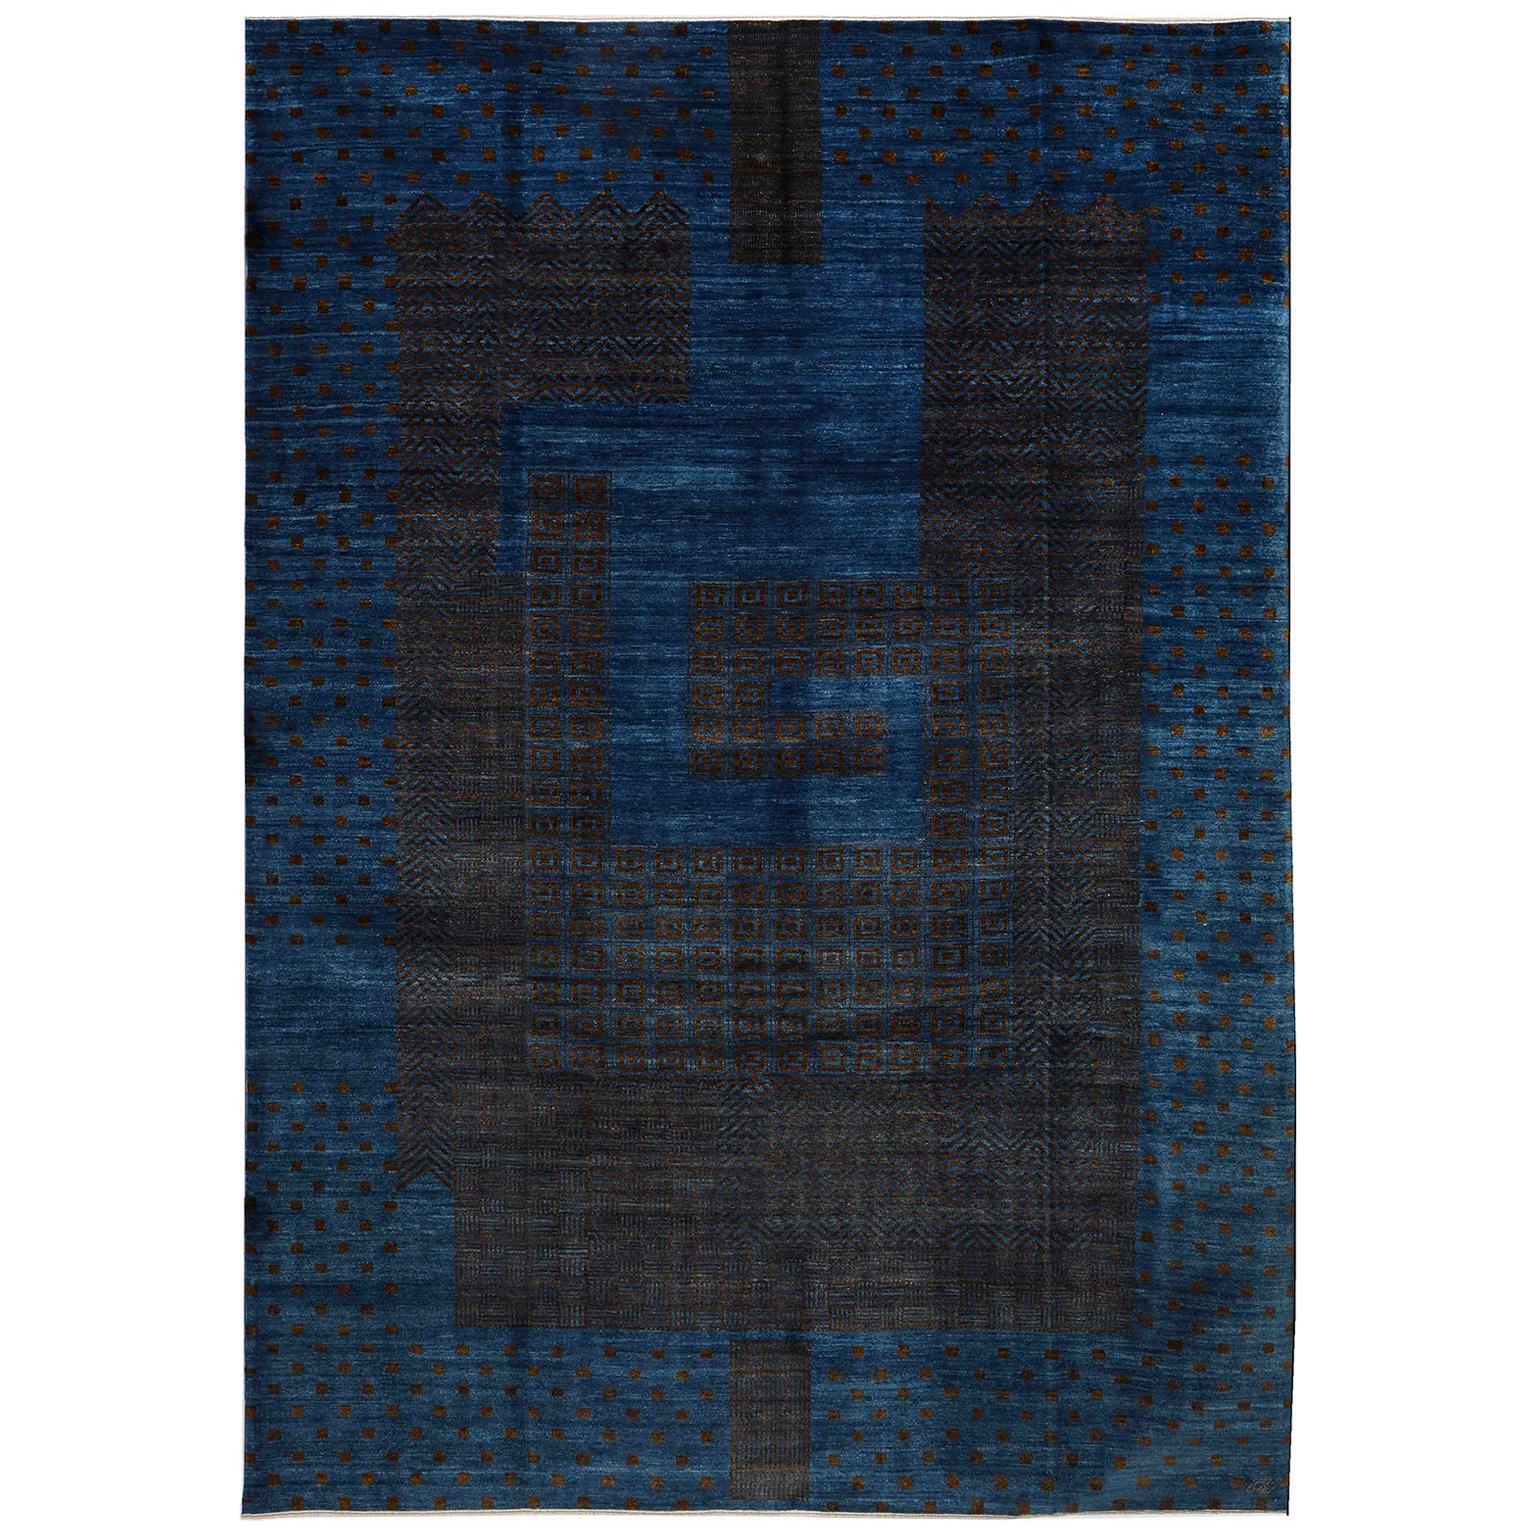 Orley Shabahang Tapis persan en laine Art déco, bleu et Brown, 9' x 12'